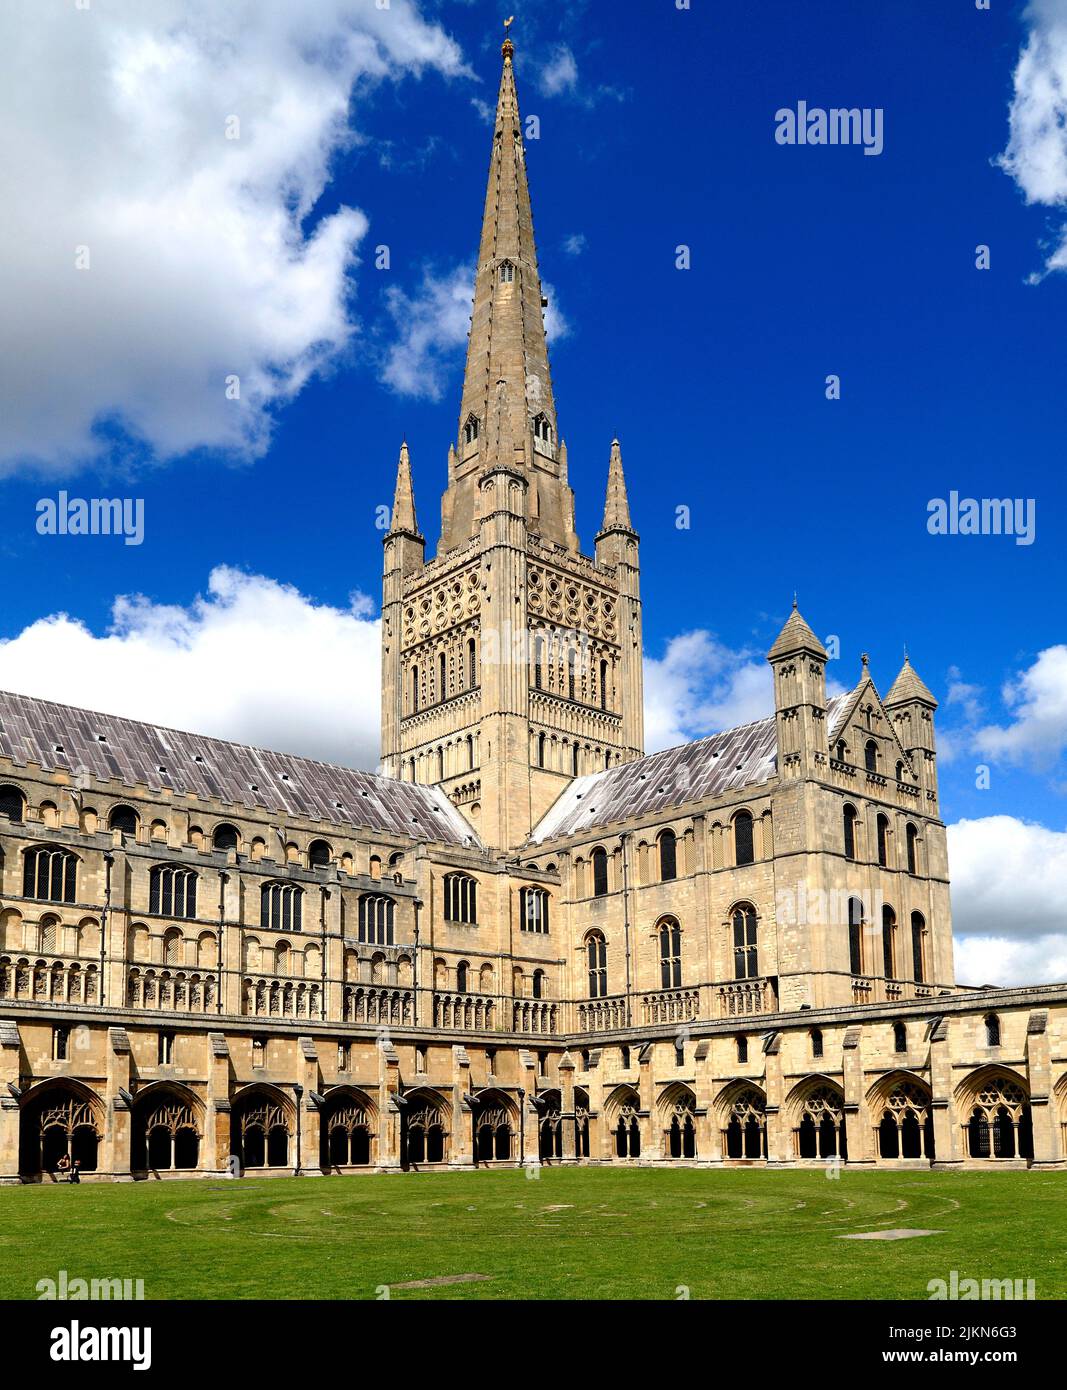 Kathedrale von Norwich, Spire, Kirchenschiff, Querschiff und Kreuzgänge, mittelalterliche Architektur, Kathedralen, Norfolk, England, Großbritannien Stockfoto